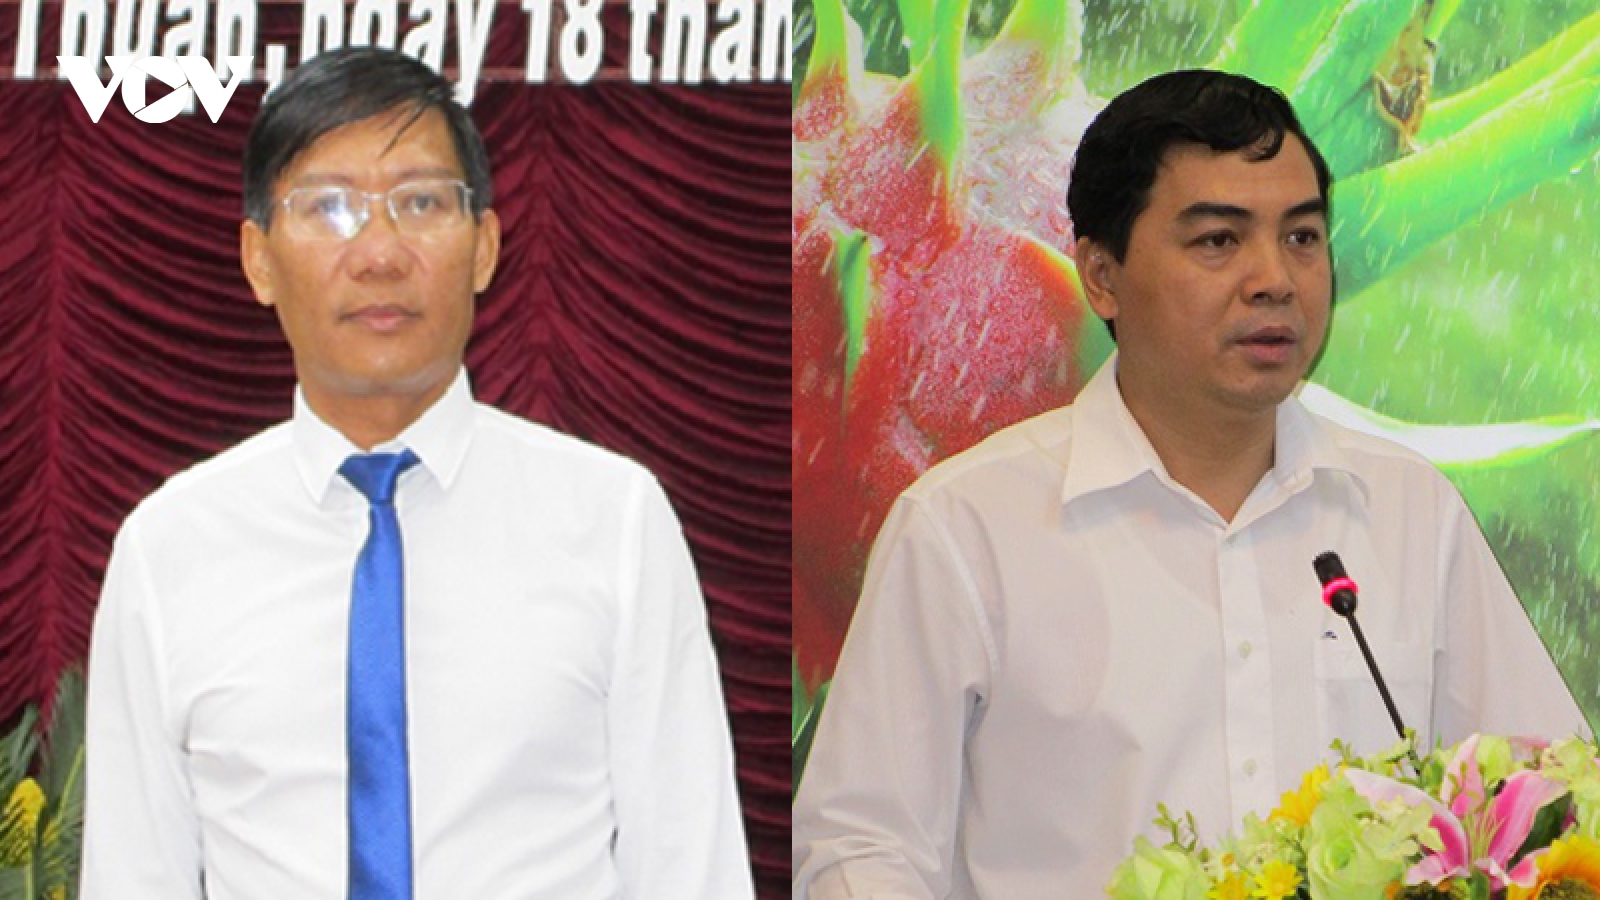 Bình Thuận bầu Chủ tịch HĐND và UBND nhiệm kỳ 2021 – 2026